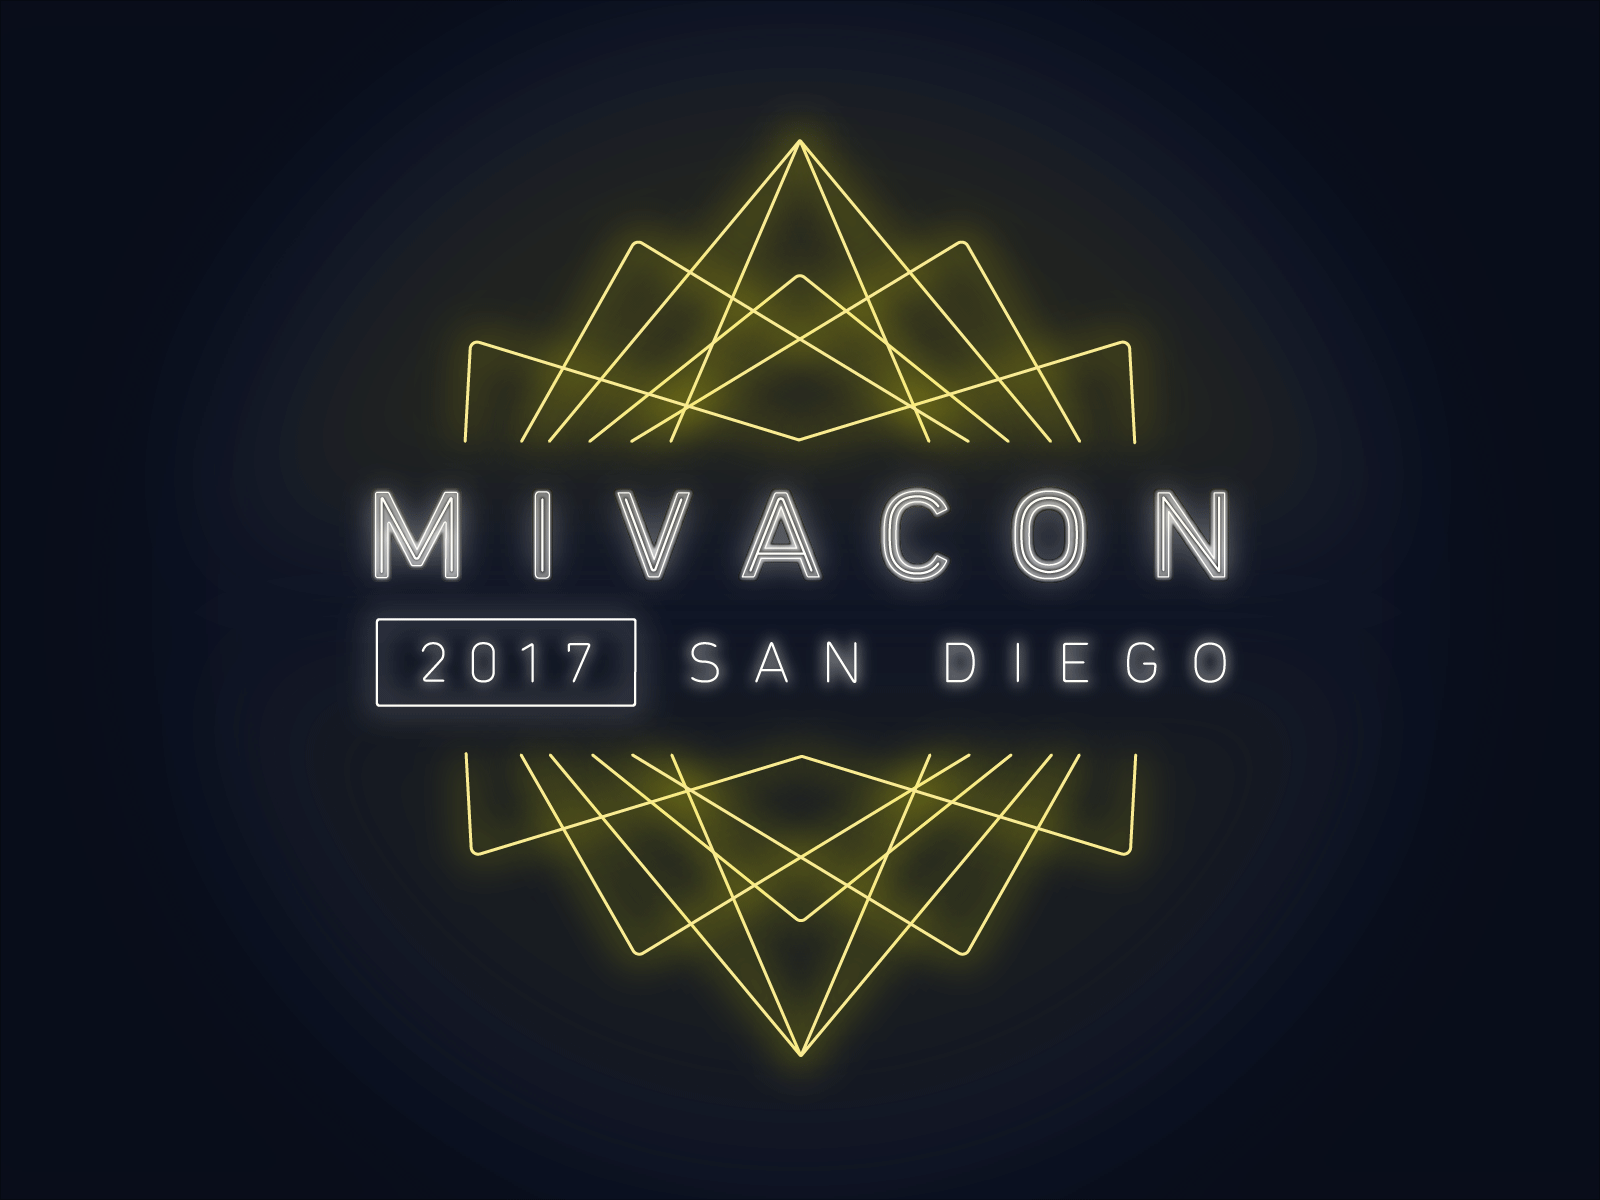 Animated MivaCon 2017 logo.